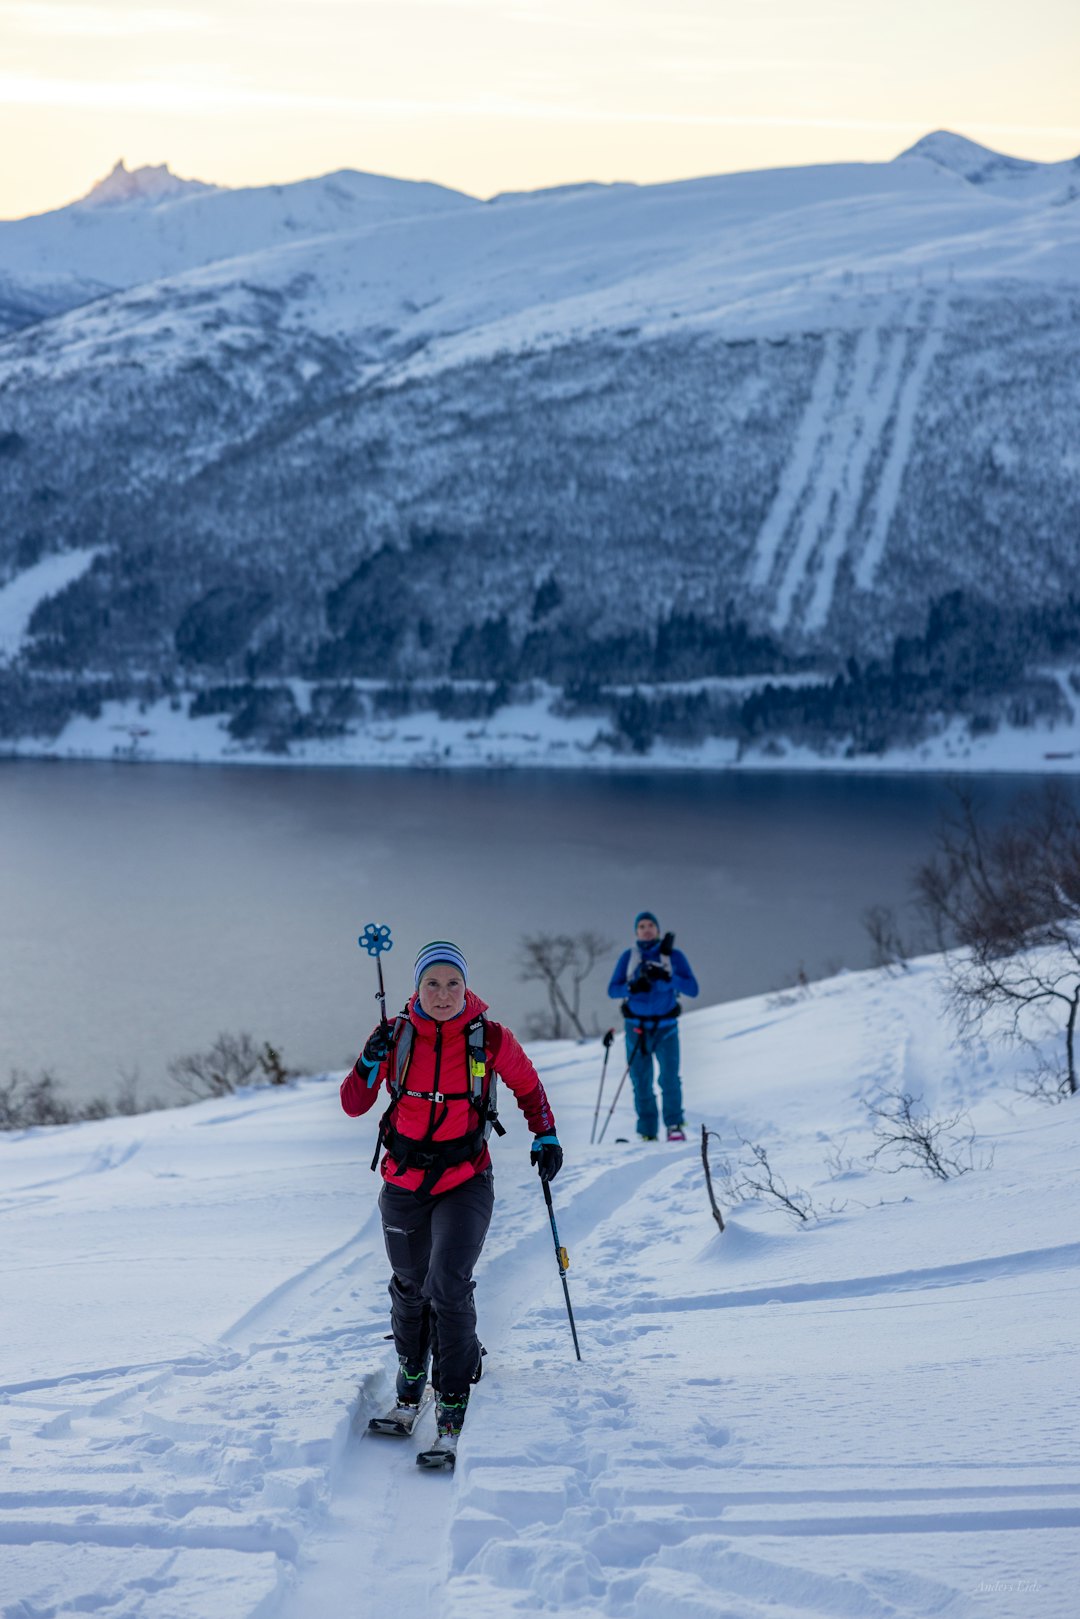 PÅ HJEMMEBANE: Hildegunn Gjertrud Hovdenak leder an på skitur hjemme i Molde søndag. Foto: Anders Eide